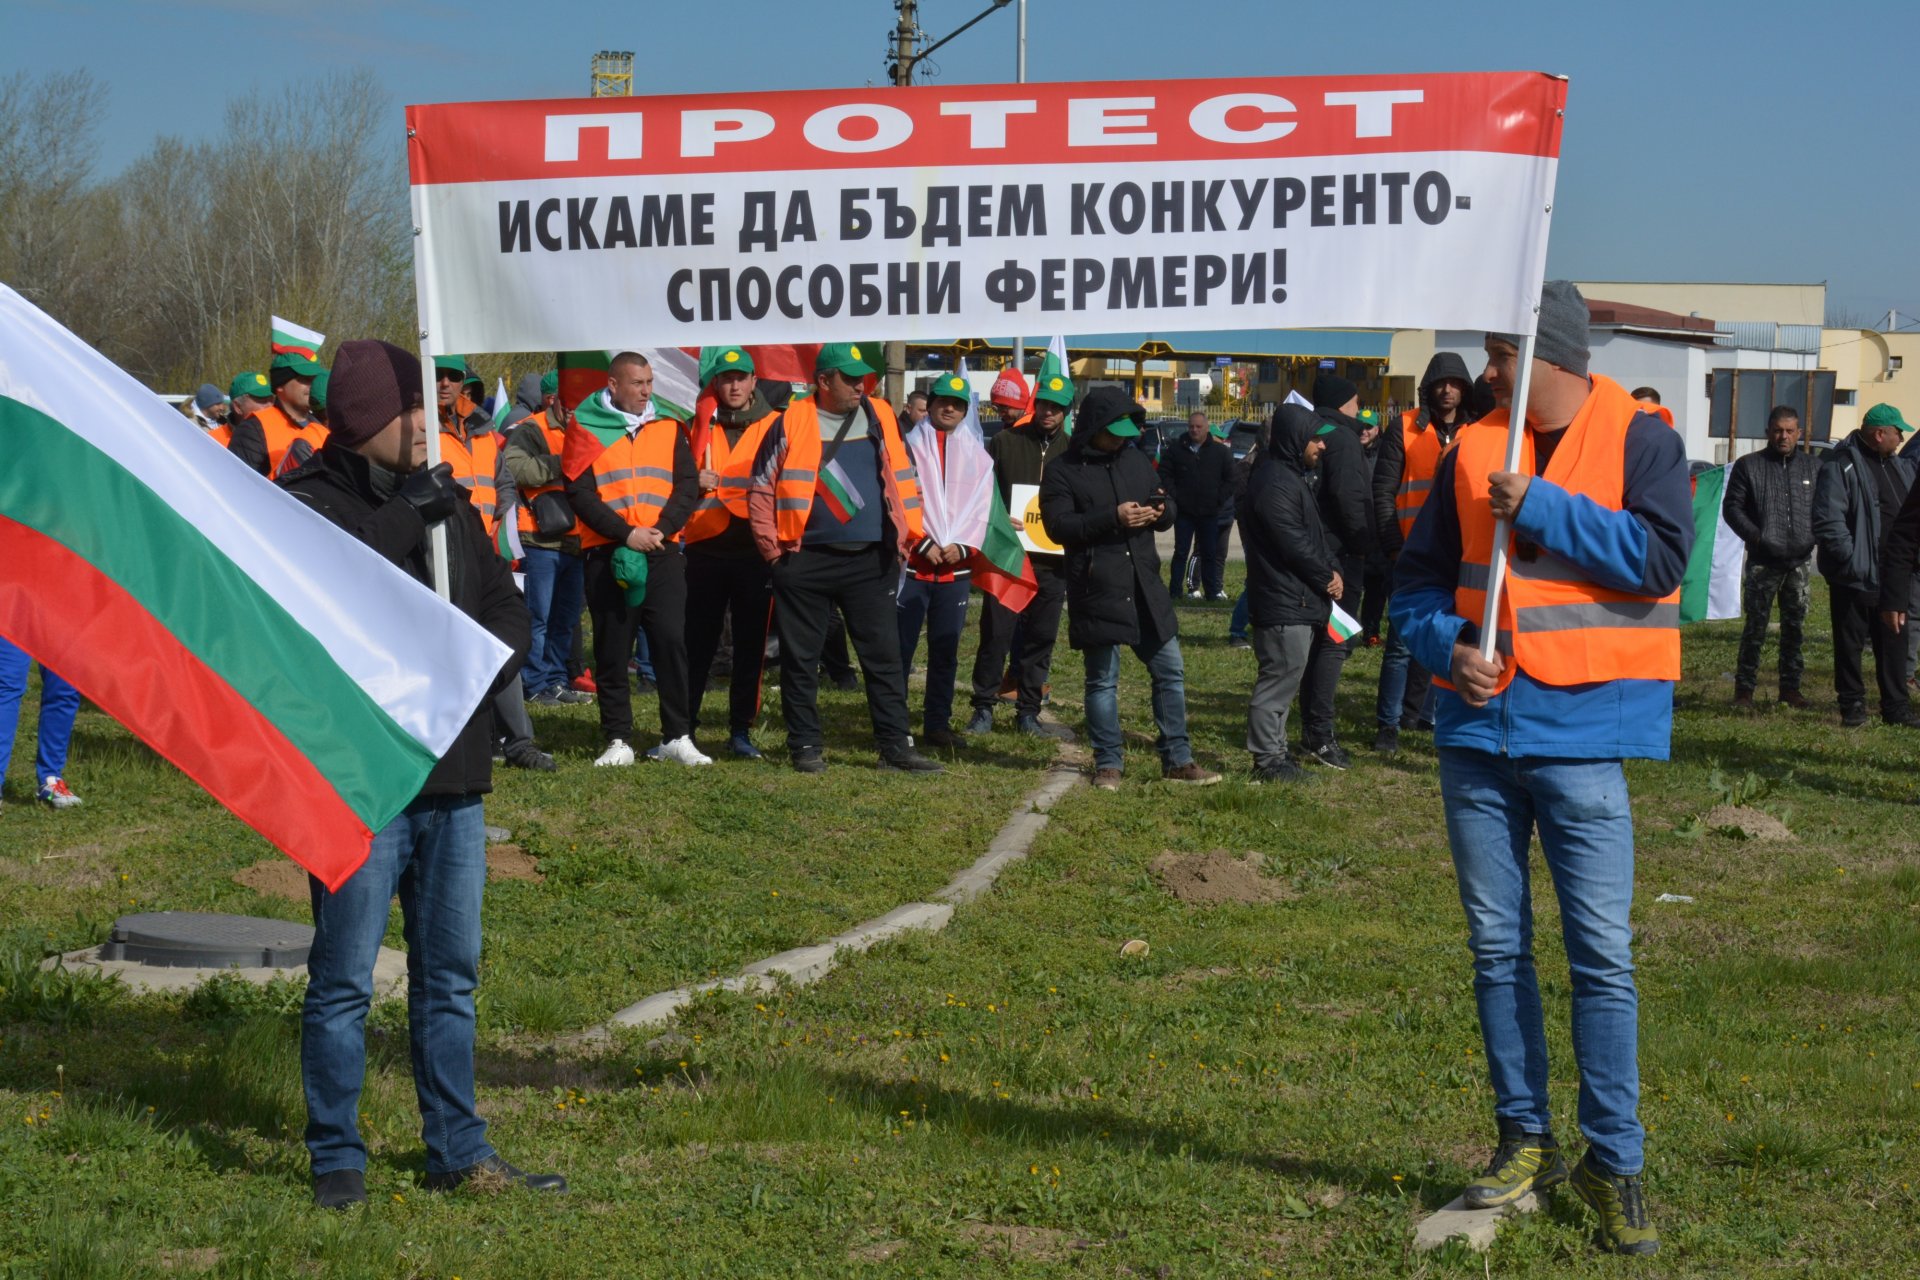 Земеделски производители от цялата страна протестират срещу вноса на украинска селскостопанска продукция